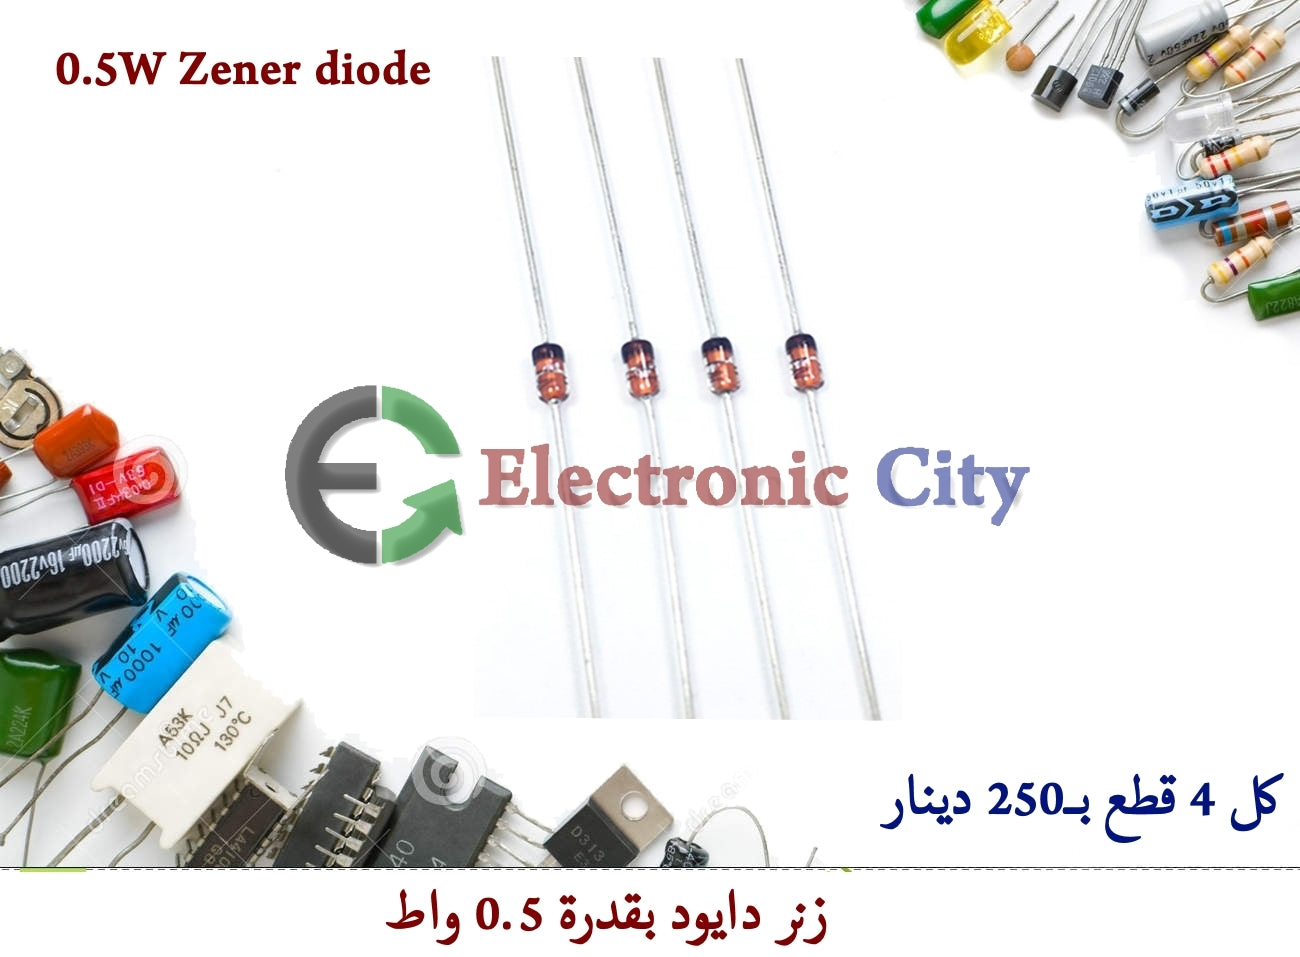 0.5W Zener diode